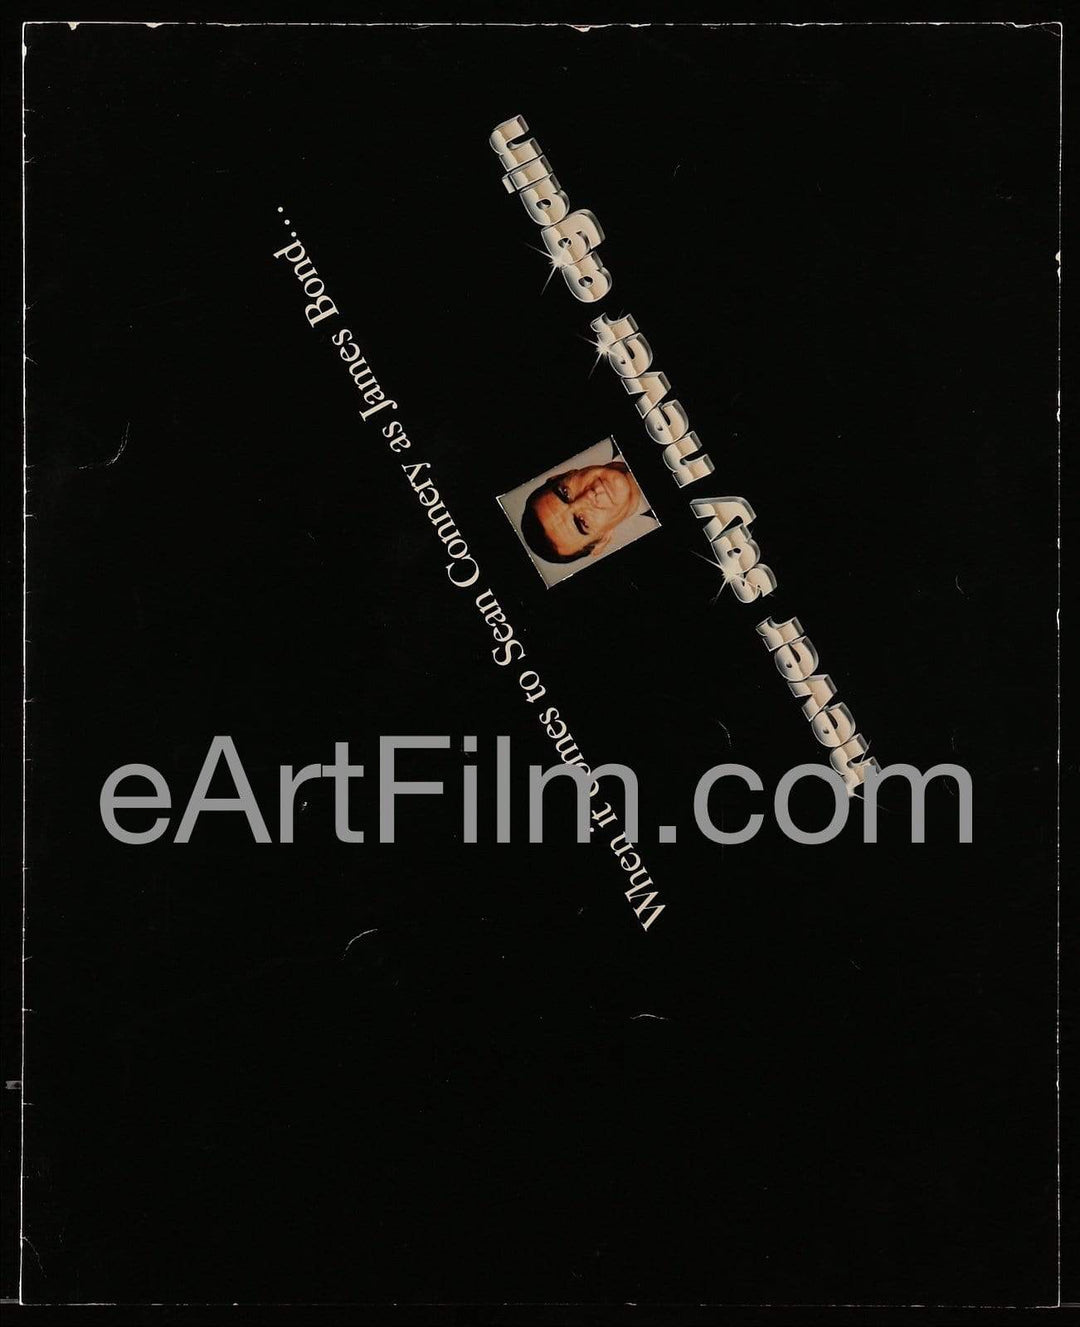 eArtFilm.com Trade Ad (14"x17.25")-U.S Never Say Never Again-1983-RARE 14x17 trade ad-Sean Connery is James Bond 007!